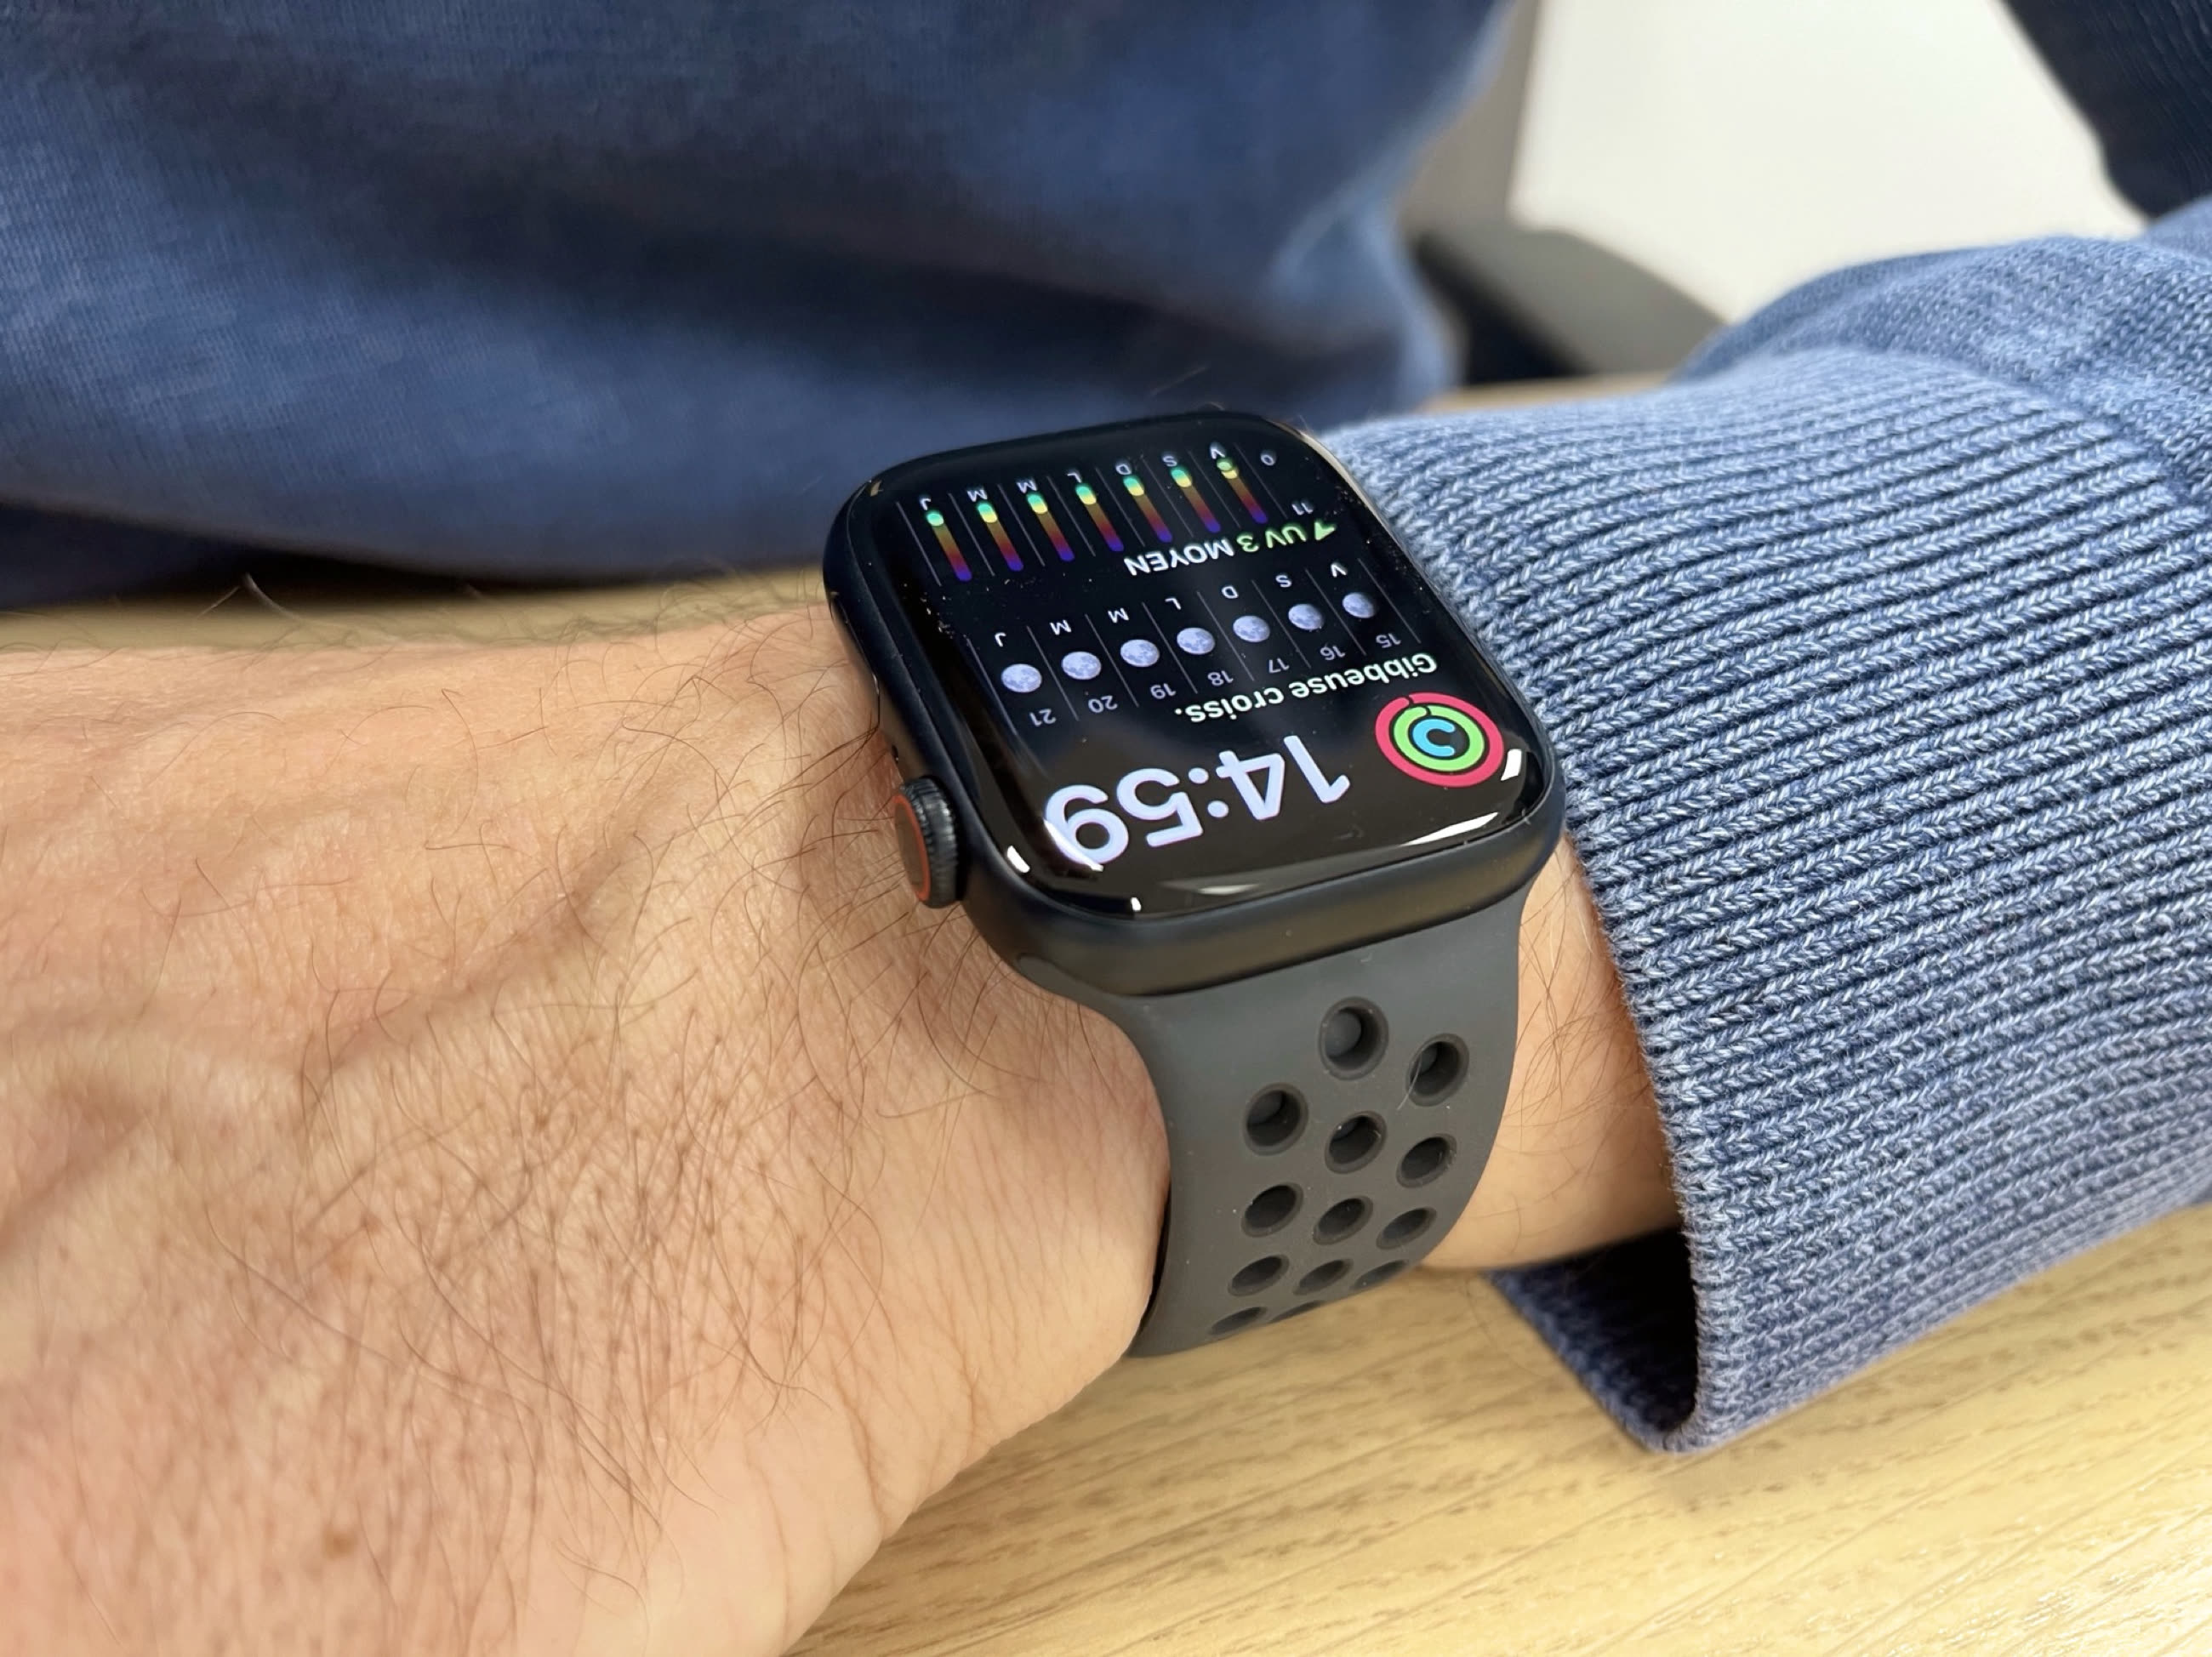 Apple dévoile l'Apple Watch Series 7, dotée d'un écran plus grand et plus  avancé que jamais - Apple (FR)